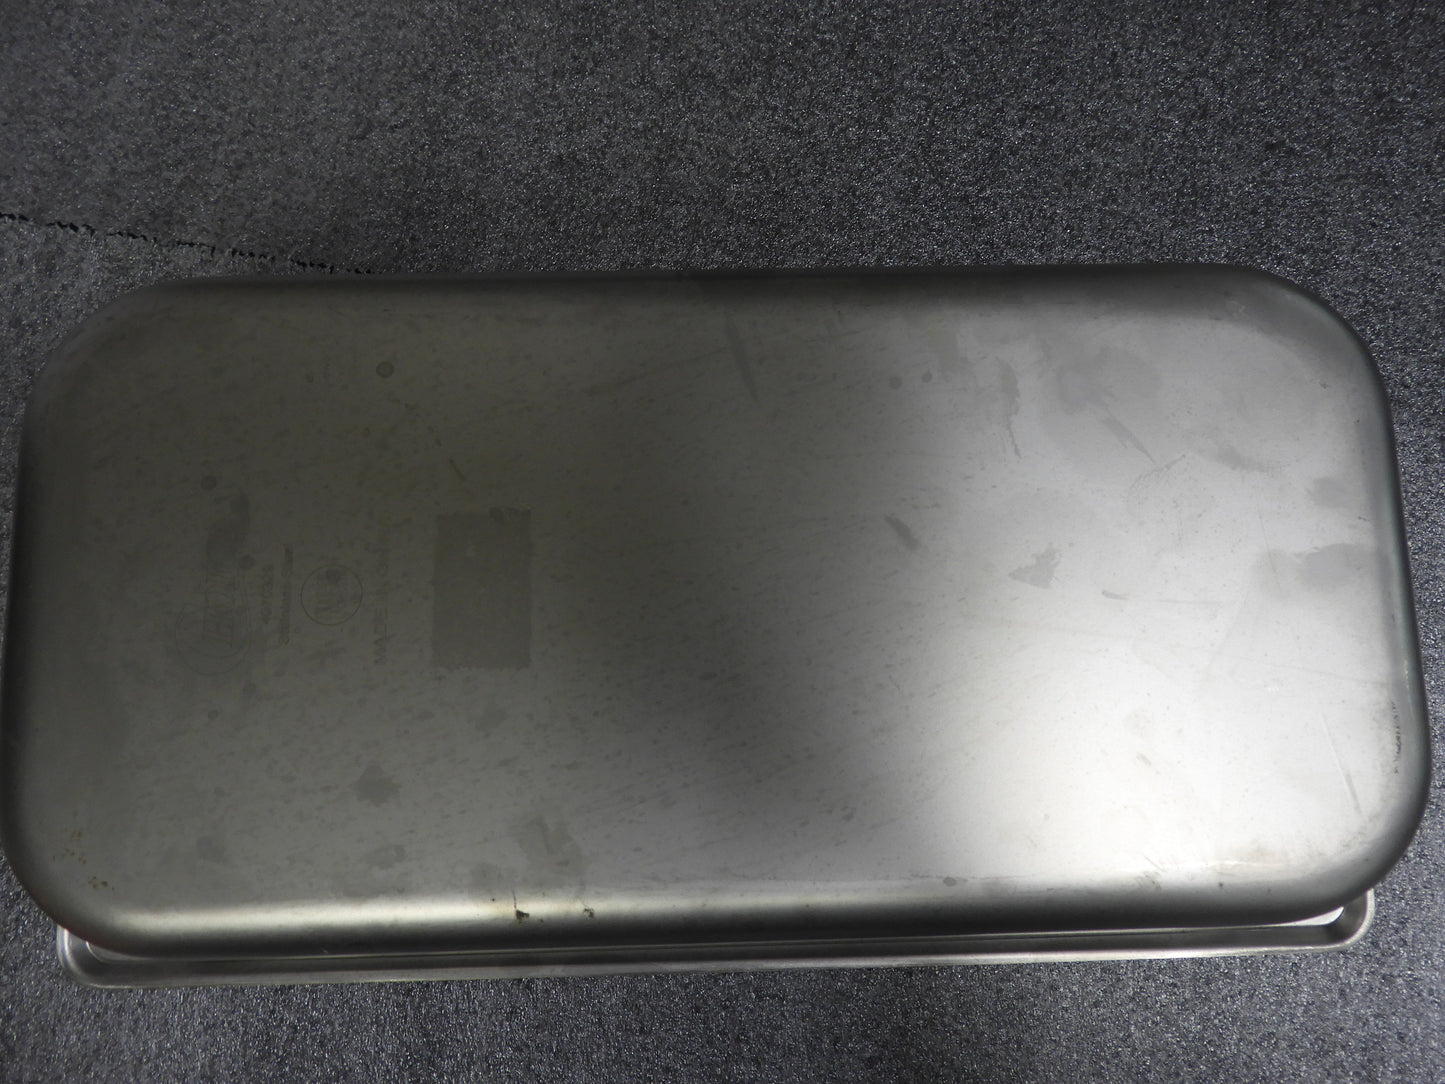 1/3 Size 6" Deep 24 Gauge Anti-Jam Stainless Steel Steam Table Pan C IP